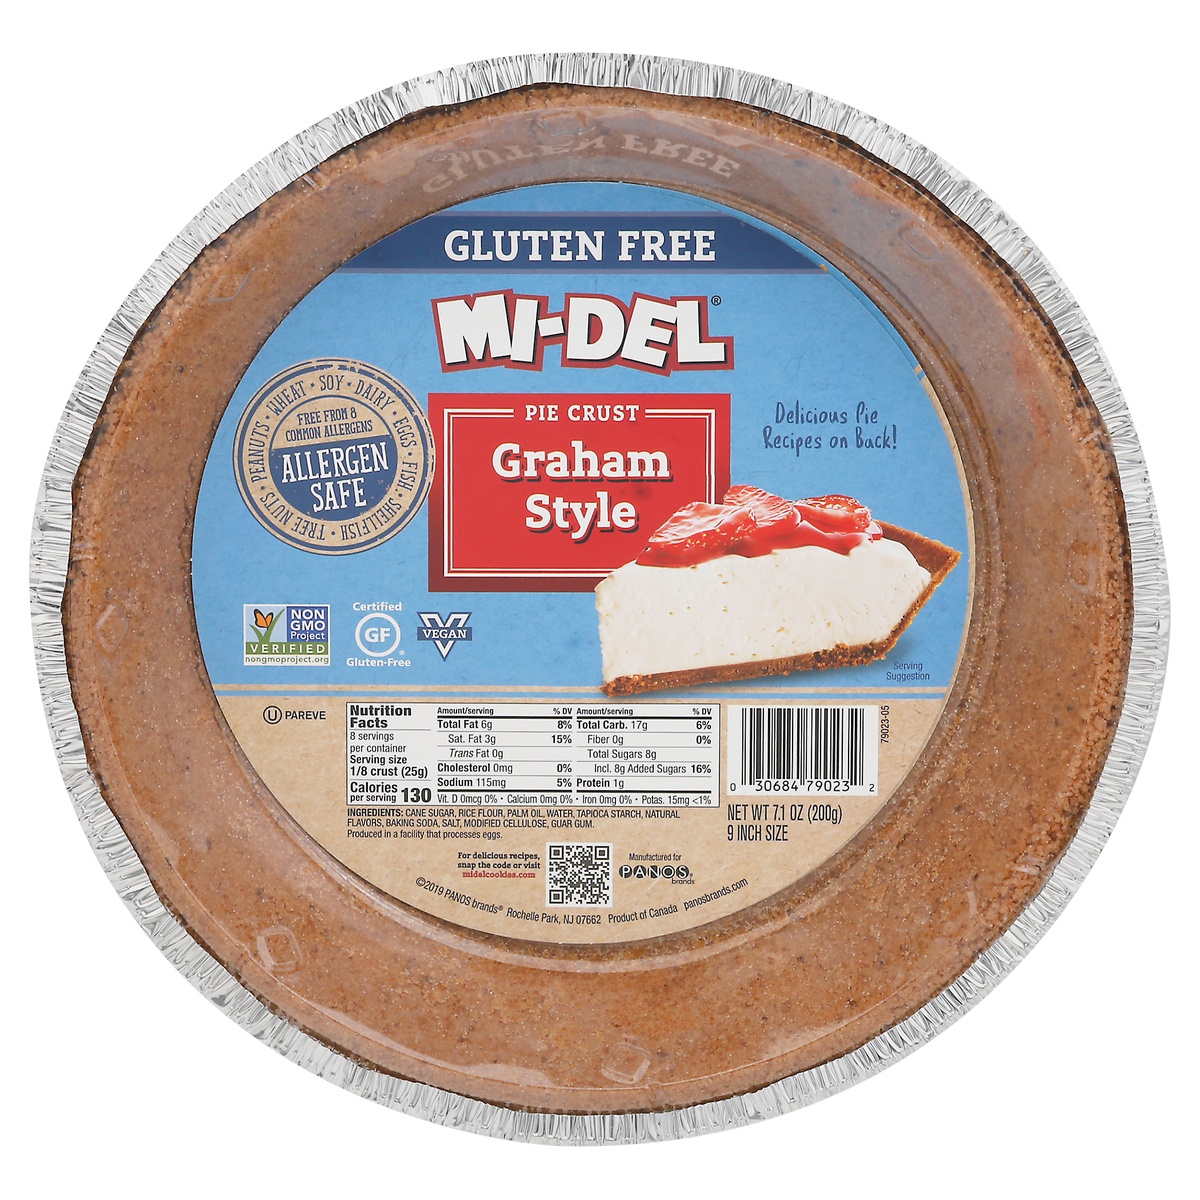 slide 1 of 1, MI-Del Gluten Free 9 Inch Size Graham Style Pie Crust 7.1 oz, 7.1 oz